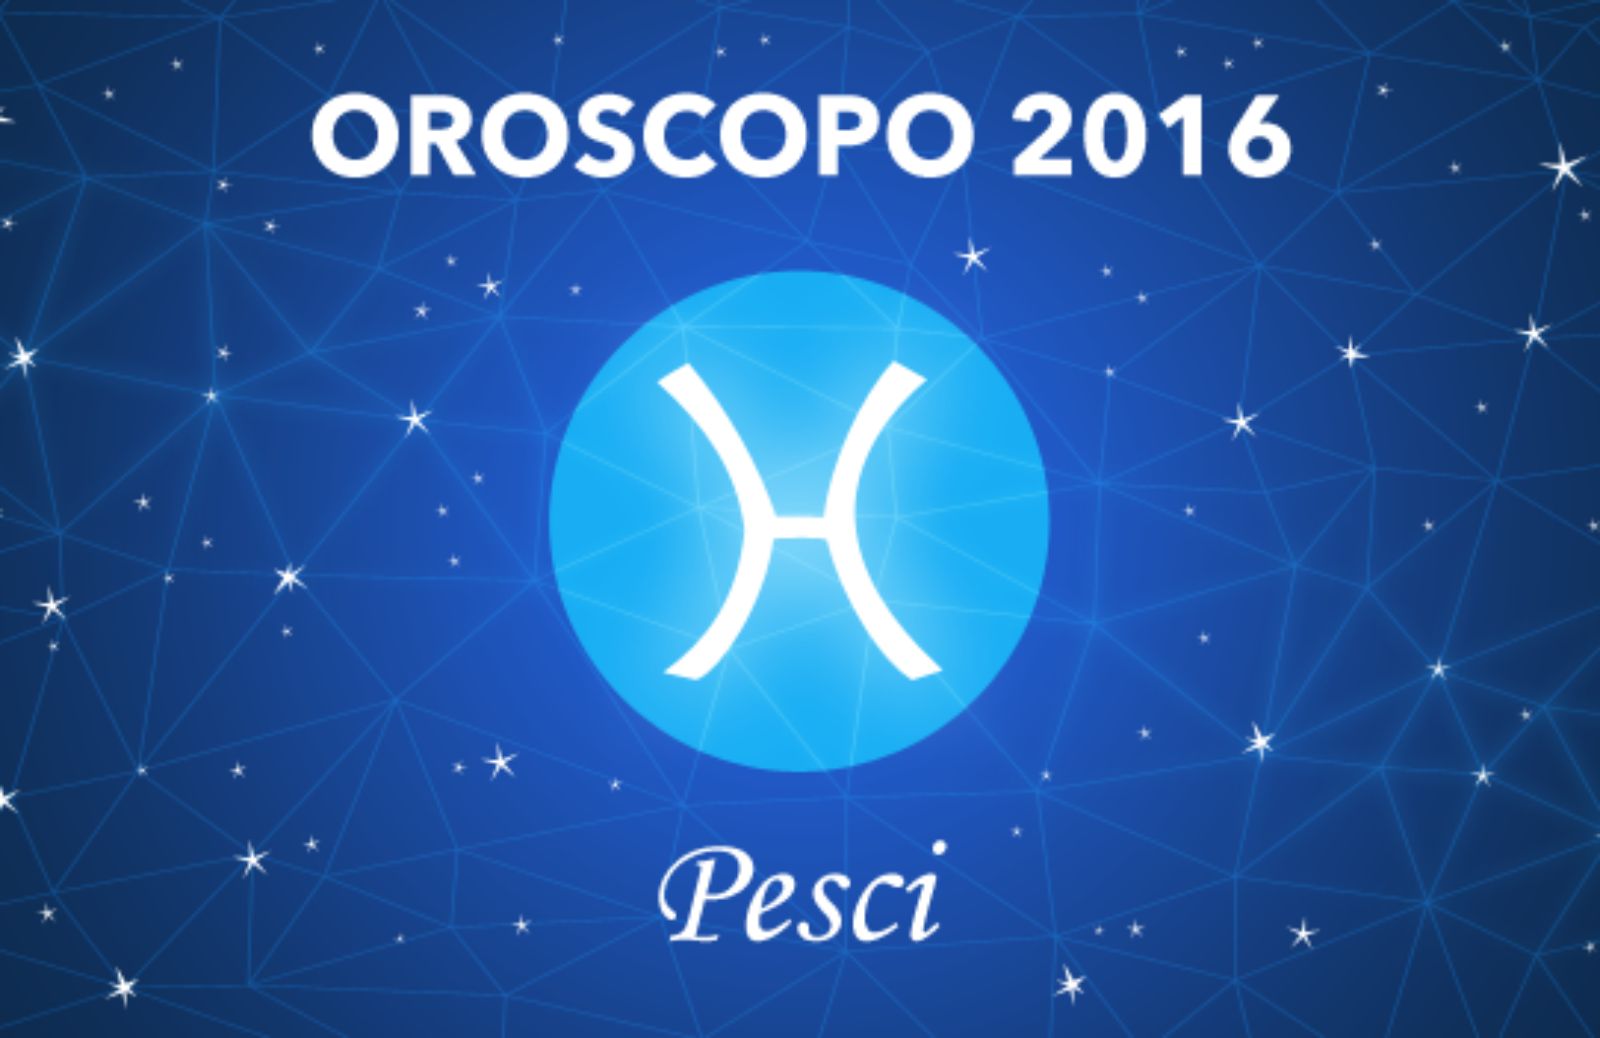 Oroscopo 2016 - Pesci